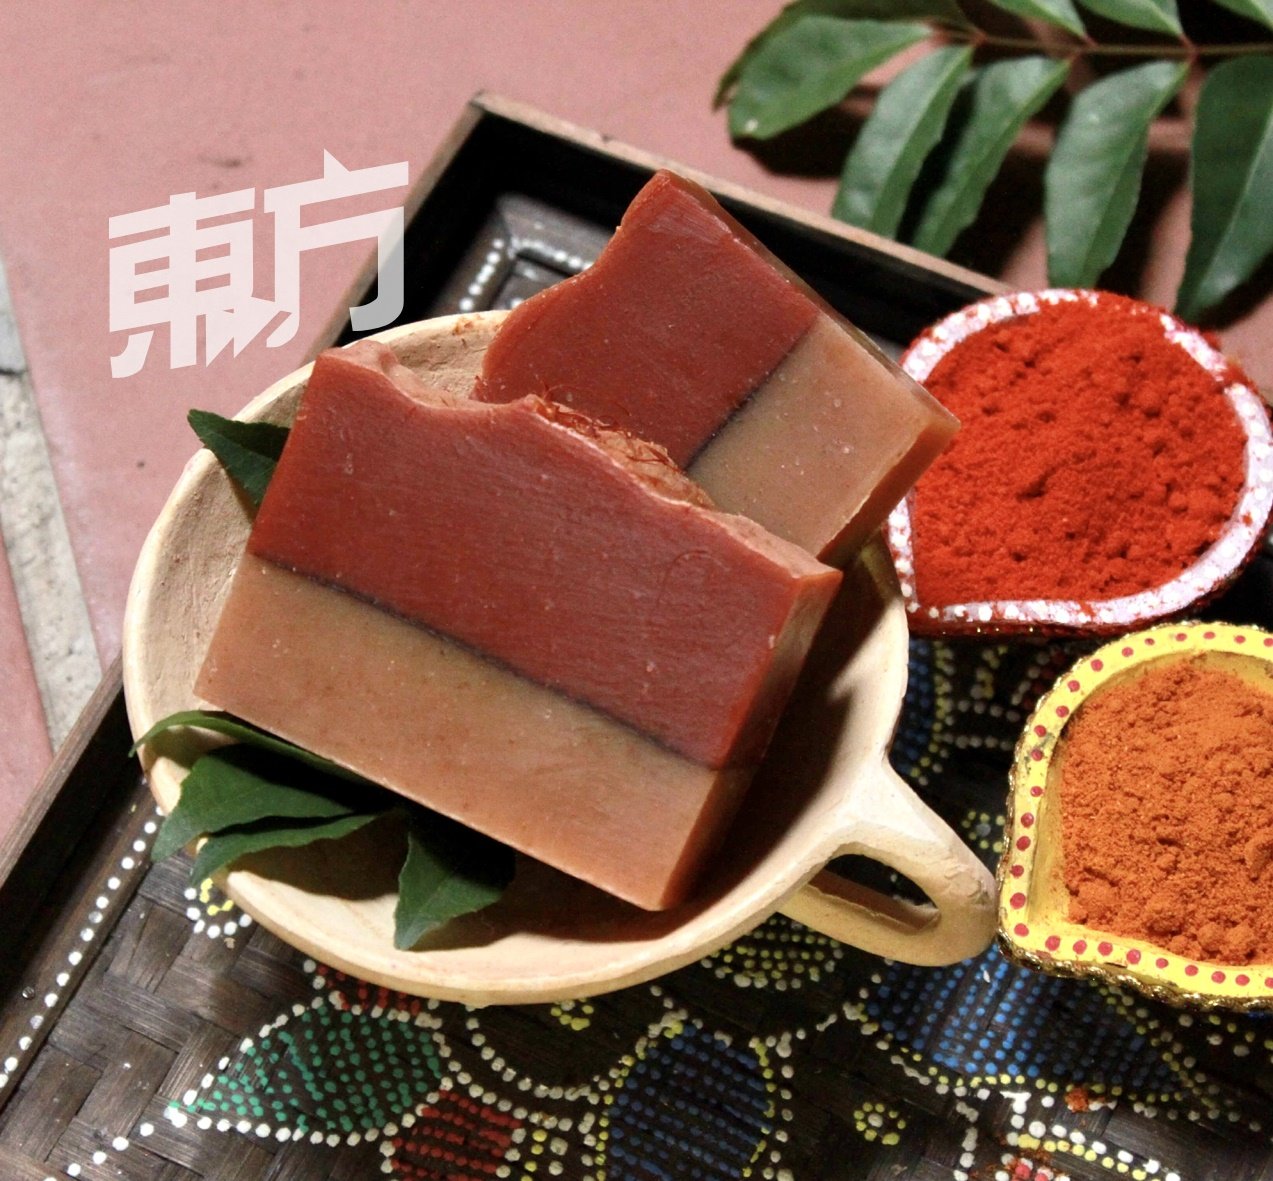 柯惠芳选用了马六甲椰糖、咖喱粉、辣椒粉、班兰叶、咖啡乌等本地常见食材，打造出娘惹糕造型的手工皂，也有峇迪布图纹的渲染皂，色彩缤纷漂亮。